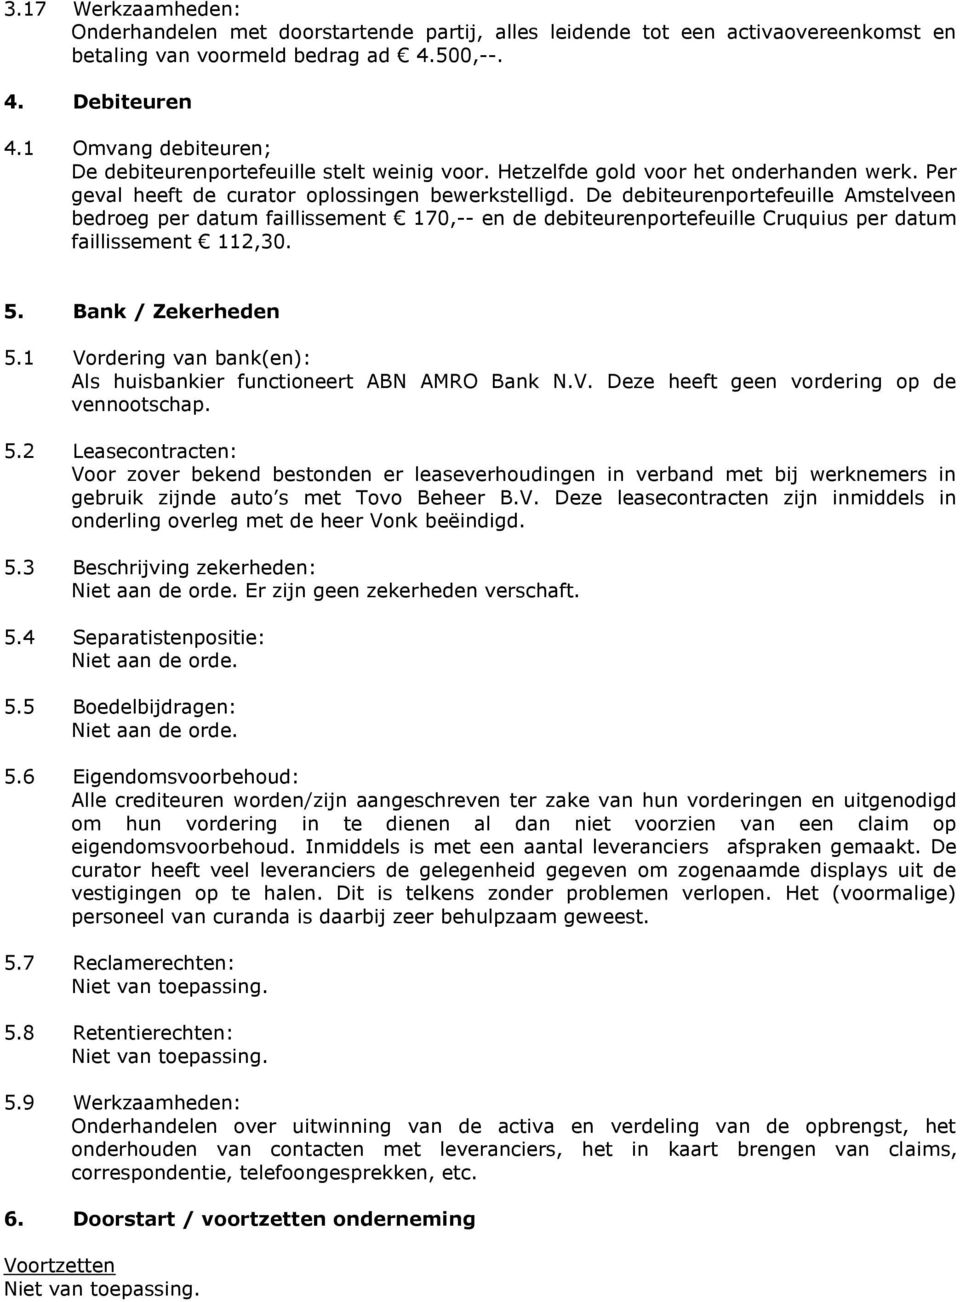 De debiteurenportefeuille Amstelveen bedroeg per datum faillissement 170,-- en de debiteurenportefeuille Cruquius per datum faillissement 112,30. 5. Bank / Zekerheden 5.